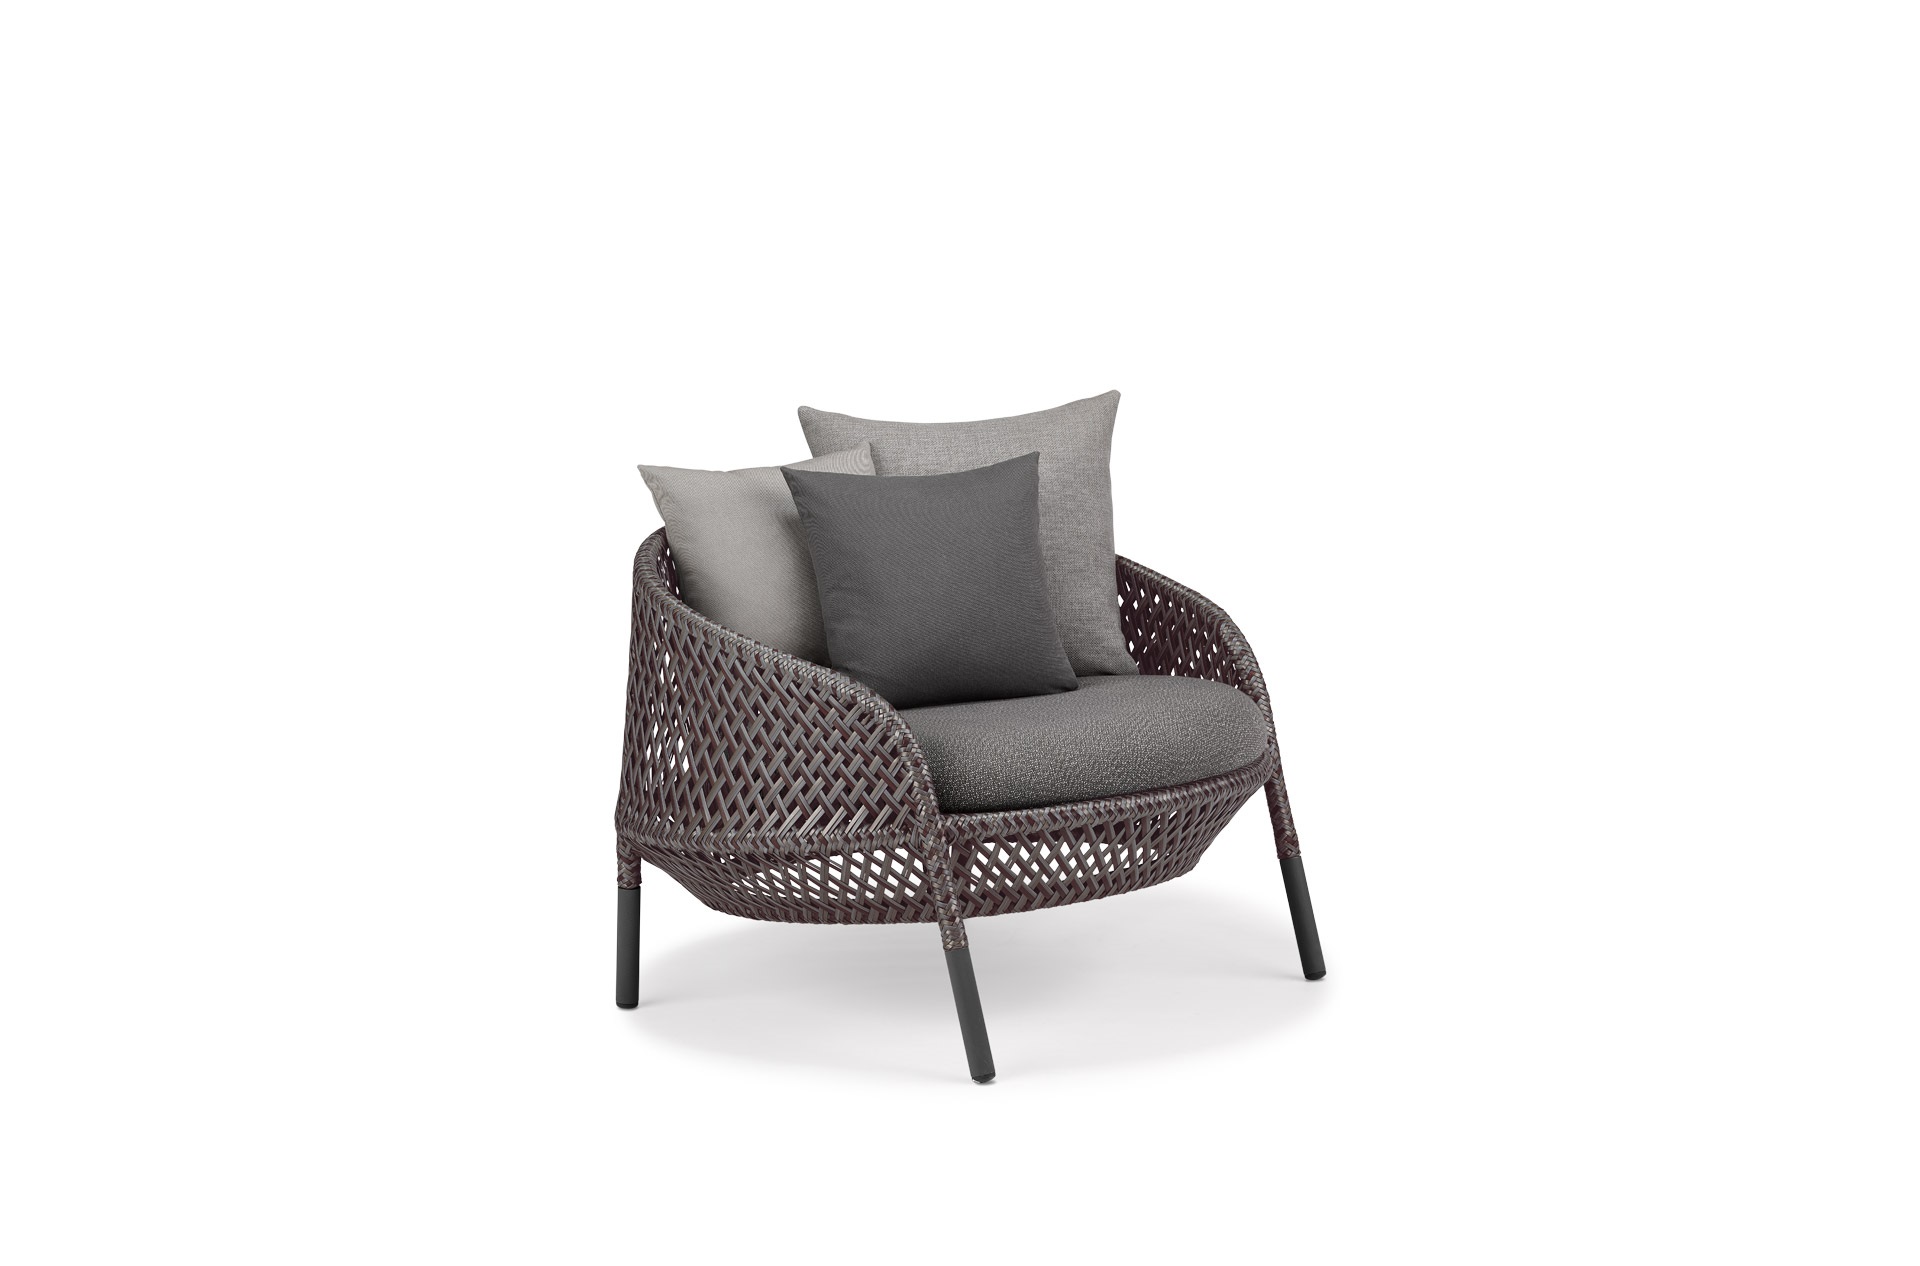 Ahnda Sessel - Lounge Chair, inkl. Polster